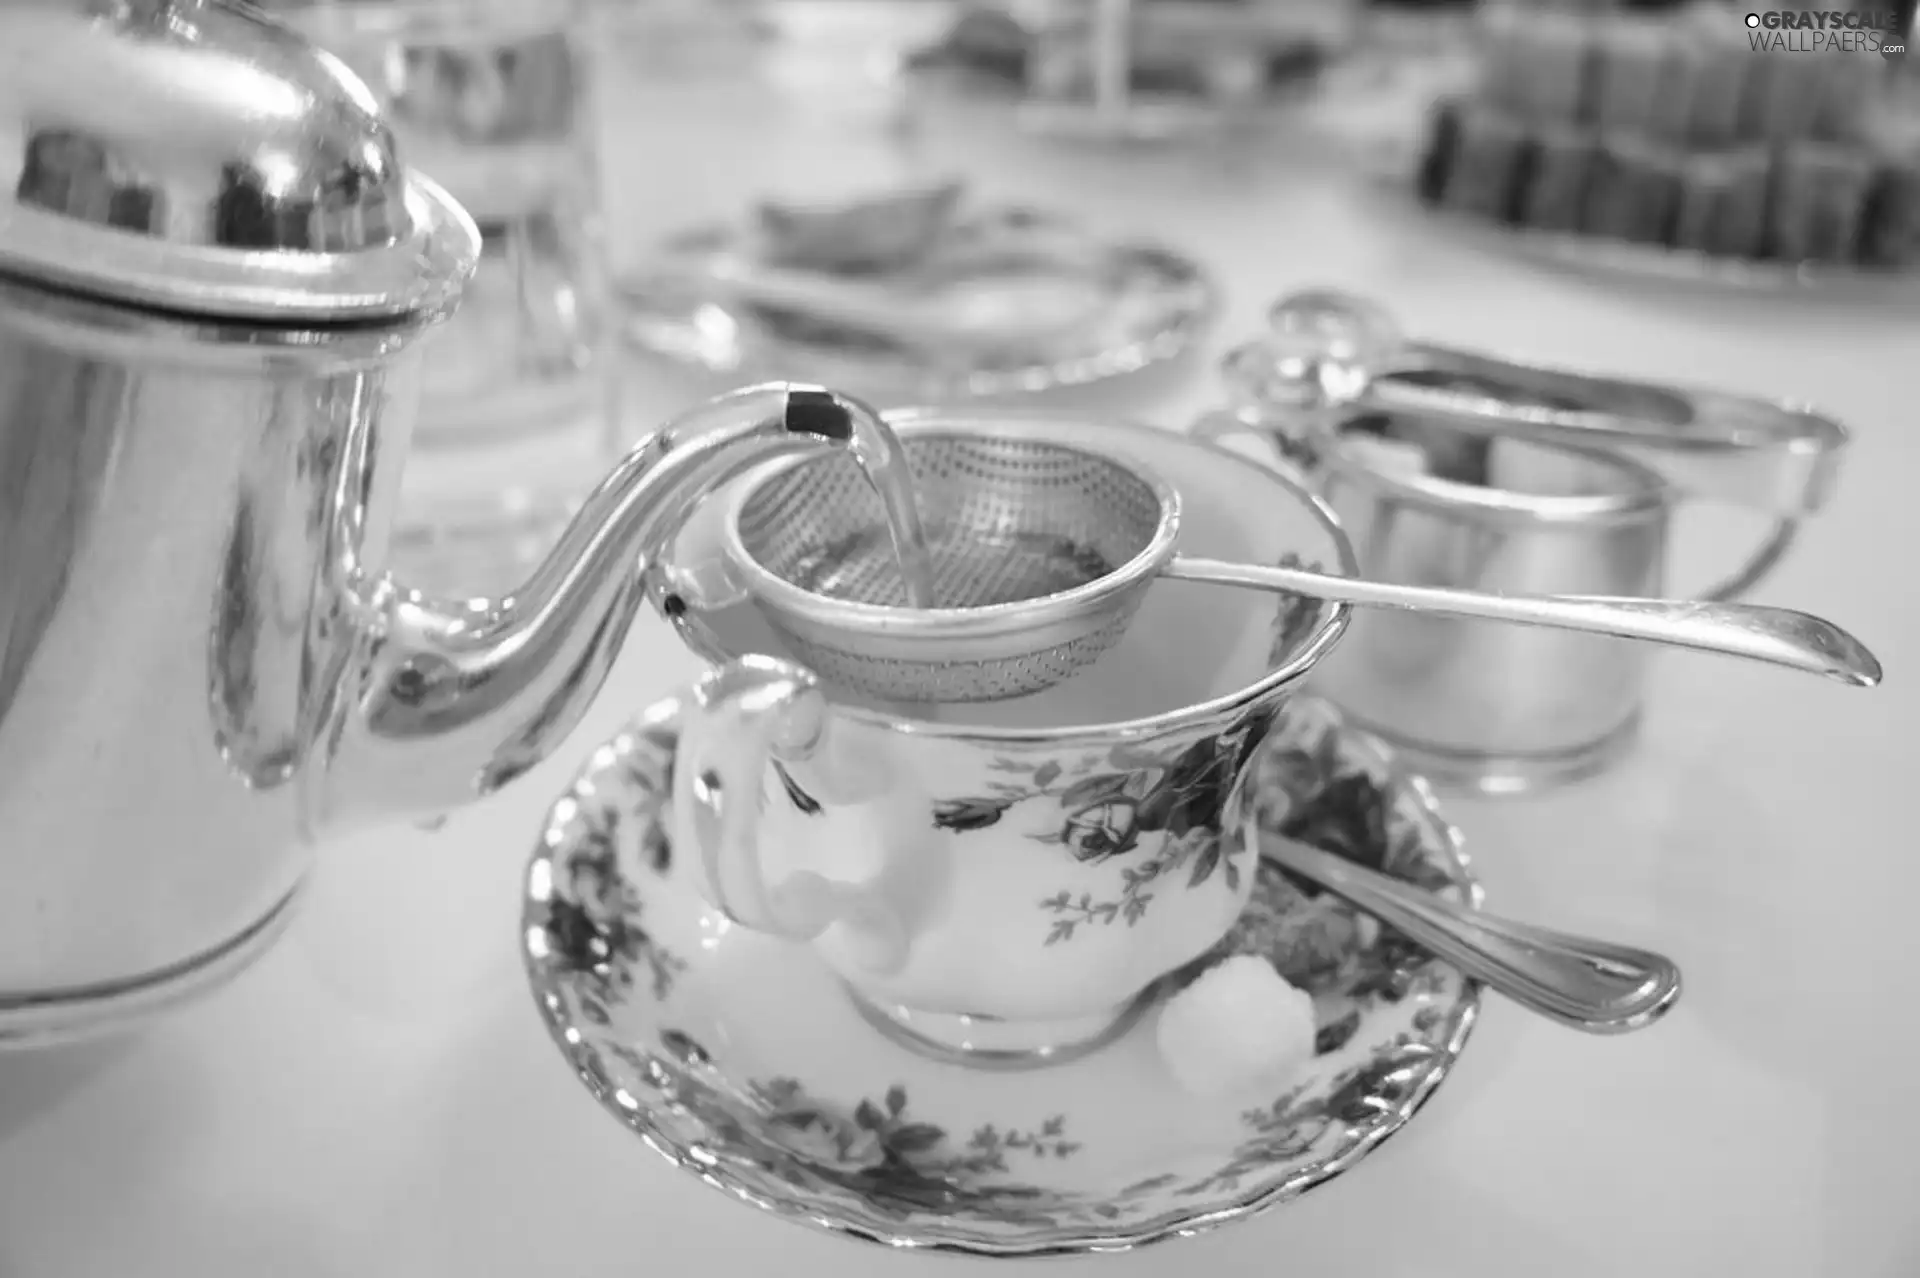 porcelain, tea, service